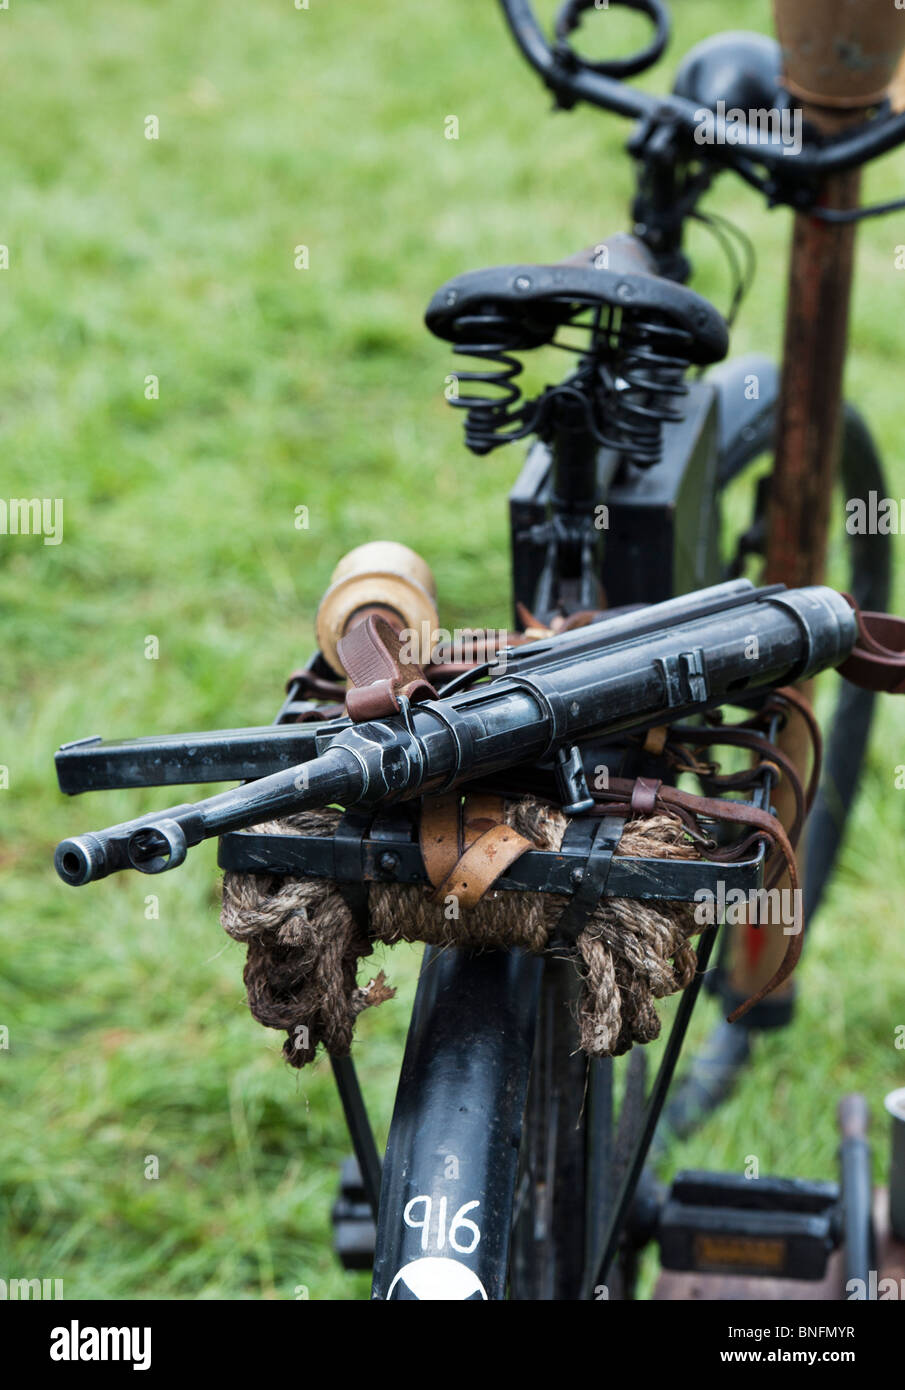 Les soldats de l'armée allemande WW2 mitraillette MP40 à l'arrière d'un vélo pendant la guerre. Re historique l'incorporation. Banque D'Images